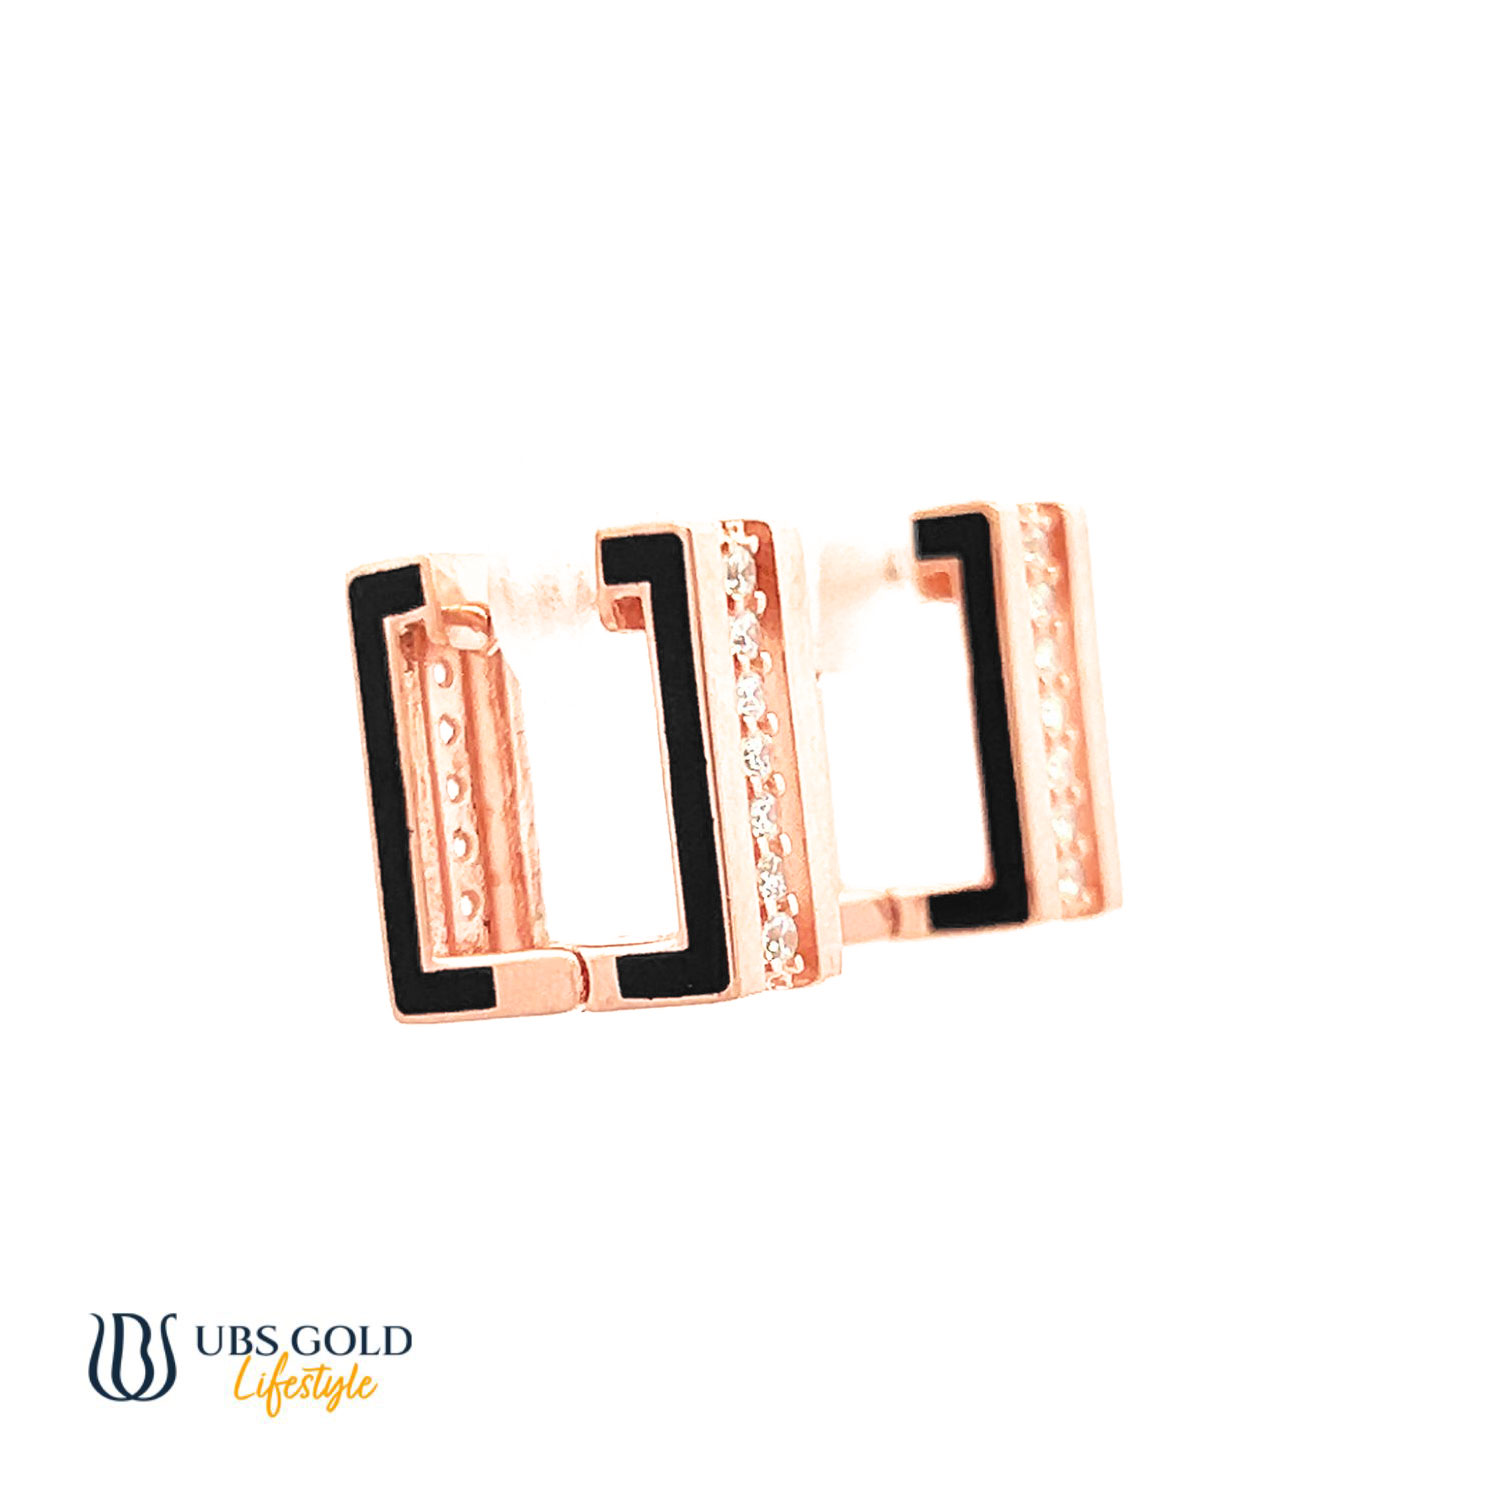 UBS Gold Anting Emas - Cda0052 - 17K